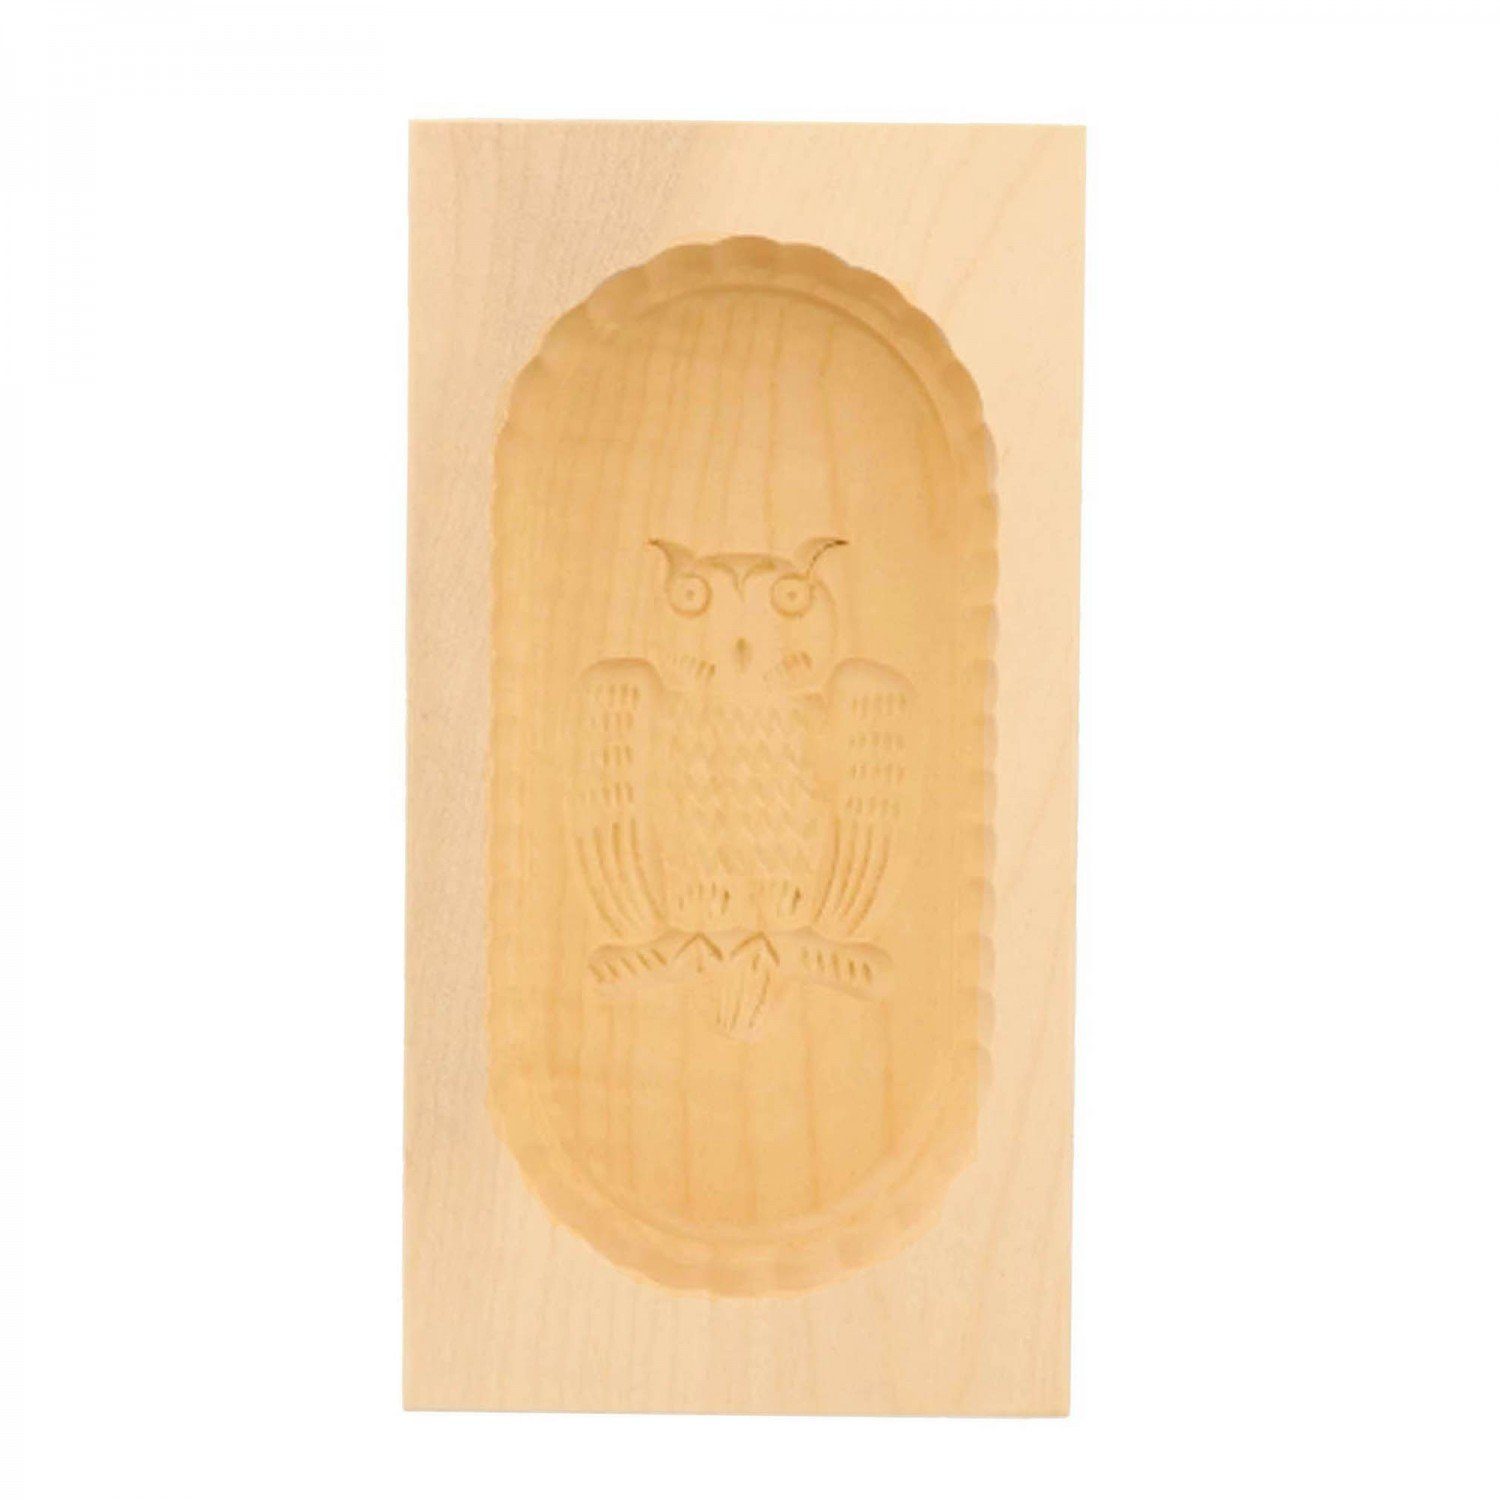 250g aus Eulen mitienda Holz Sturz-Form Butterform Motiv, Servierplatte